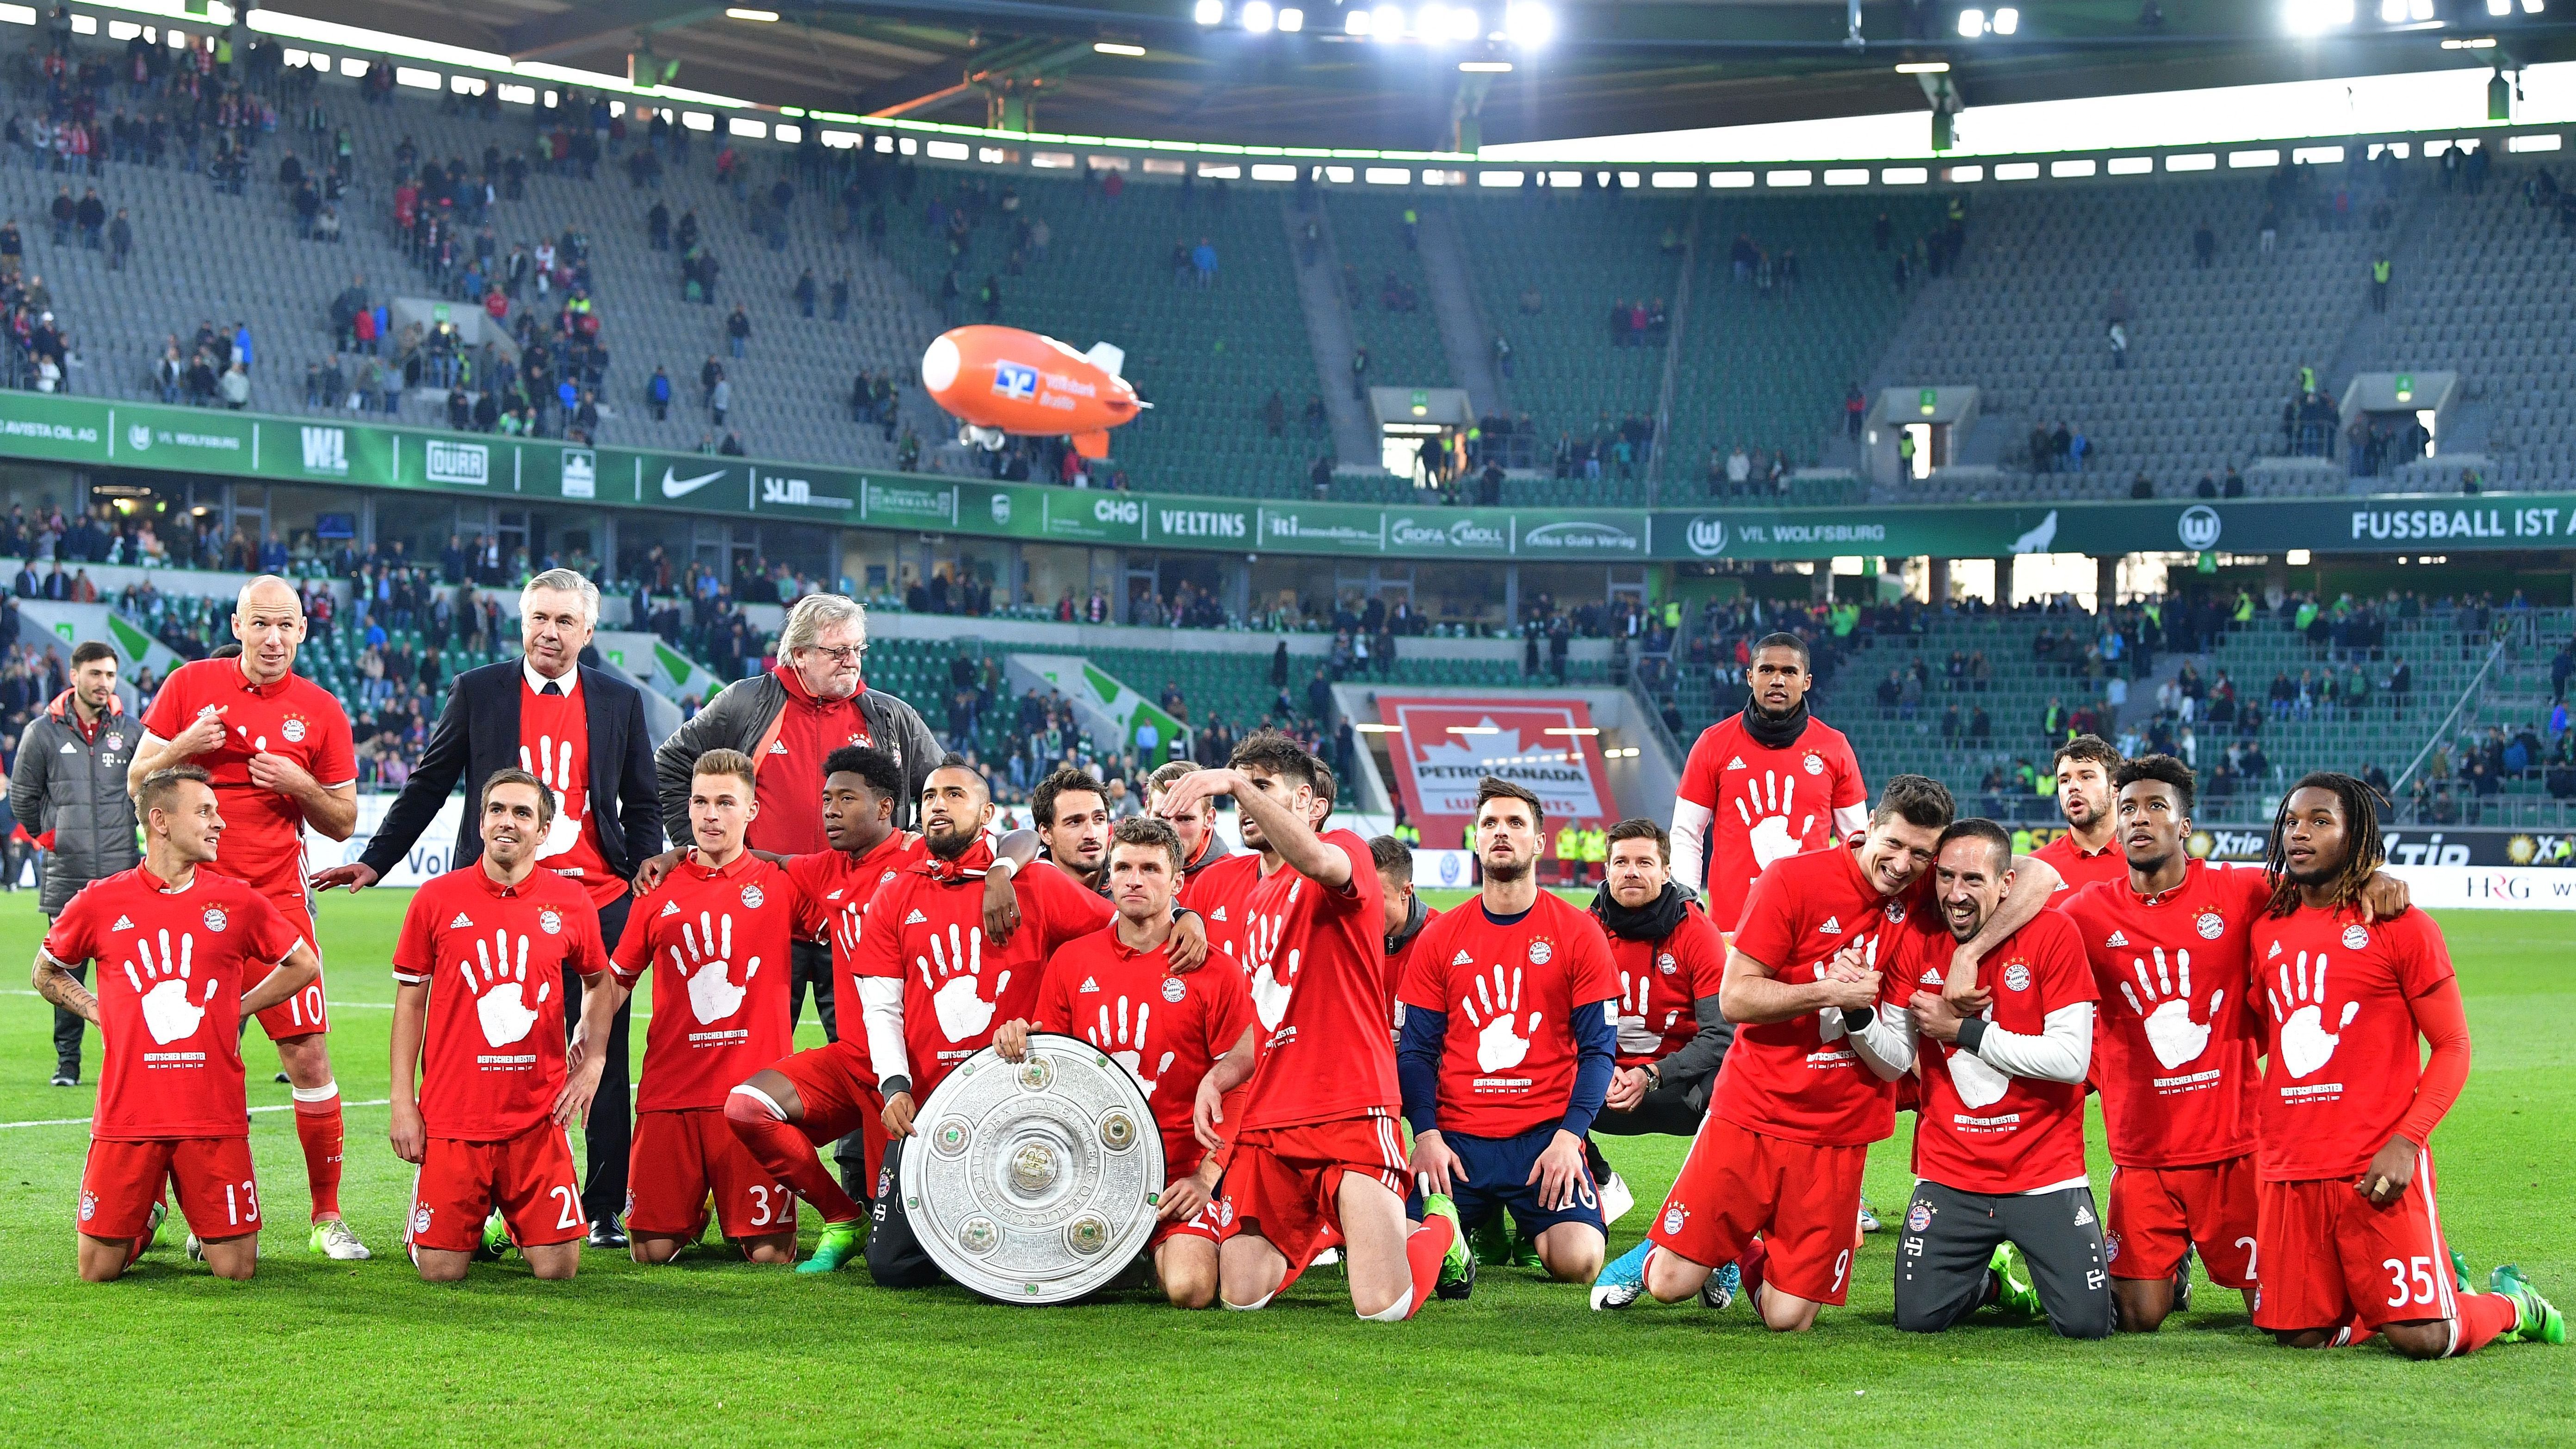 <strong>8. FC Bayern 2016/17 - 31. Spieltag</strong><br>Im ersten Jahr unter Trainer Carlo Ancelotti sichert sich der FC Bayern drei Spieltage vor dem Saisonfinale durch ein furioses 6:0 in Wolfsburg den Titel. Der Kantersieg reicht aber nur, weil sich RB Leipzig - in jener Saison Aufsteiger - durch ein 0:0 gegen Ingolstadt auch rechnerisch aus dem Titelrennen verabschiedet.